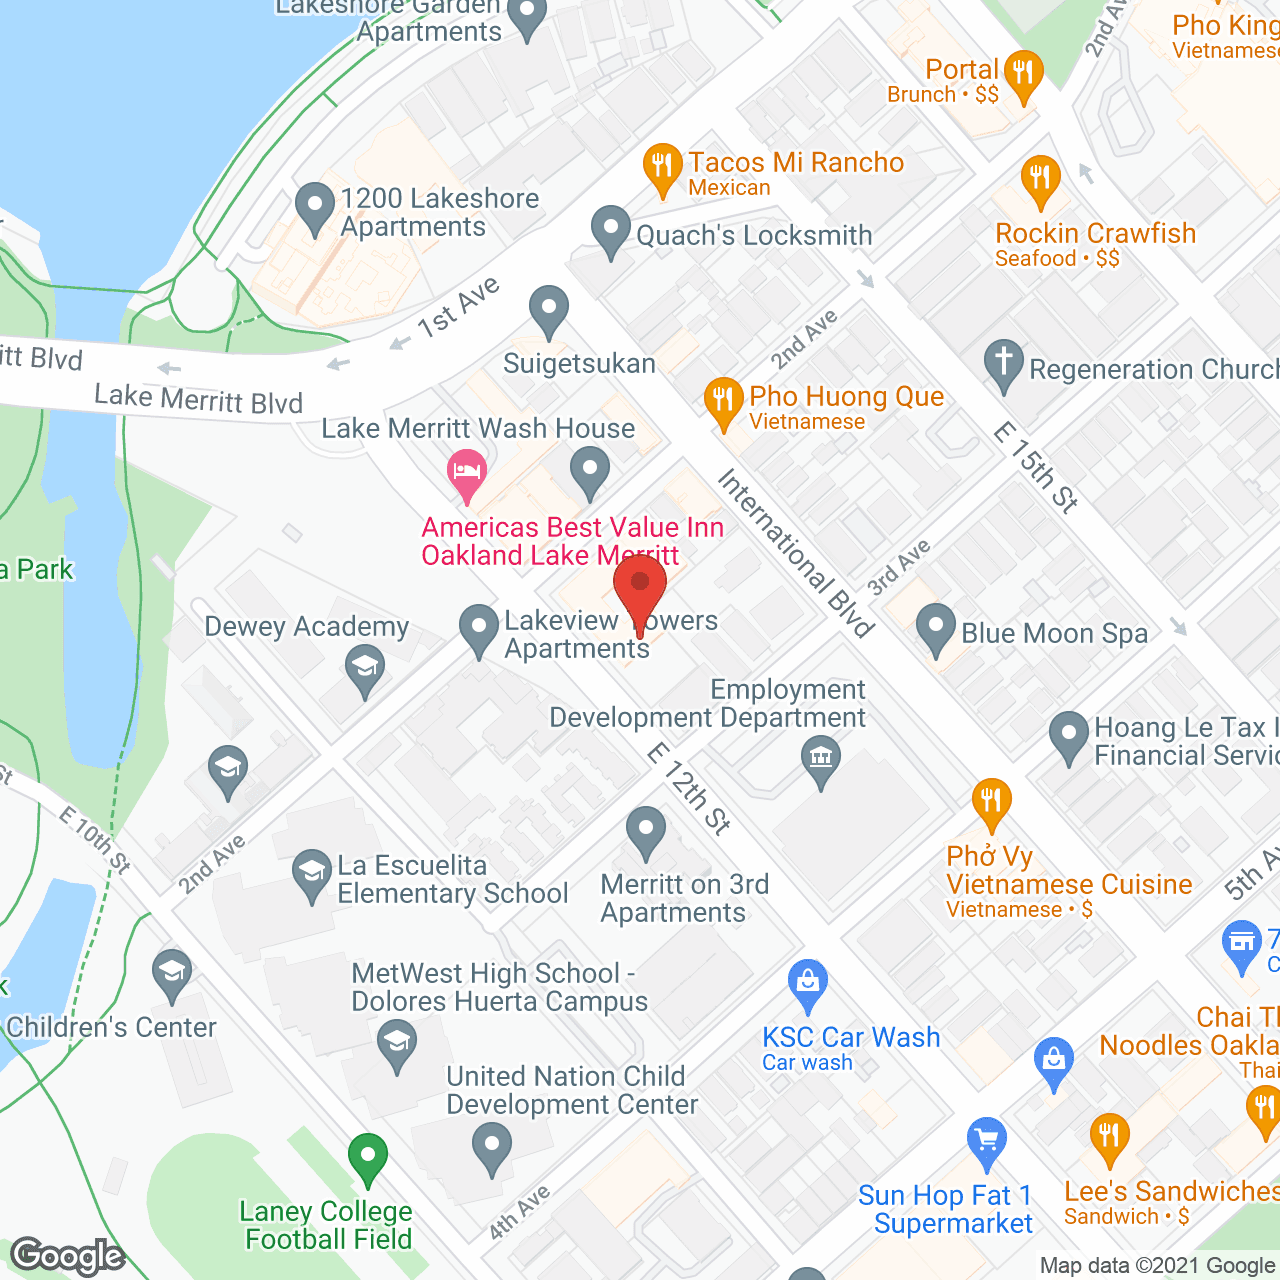 J L Richard Terrace in google map